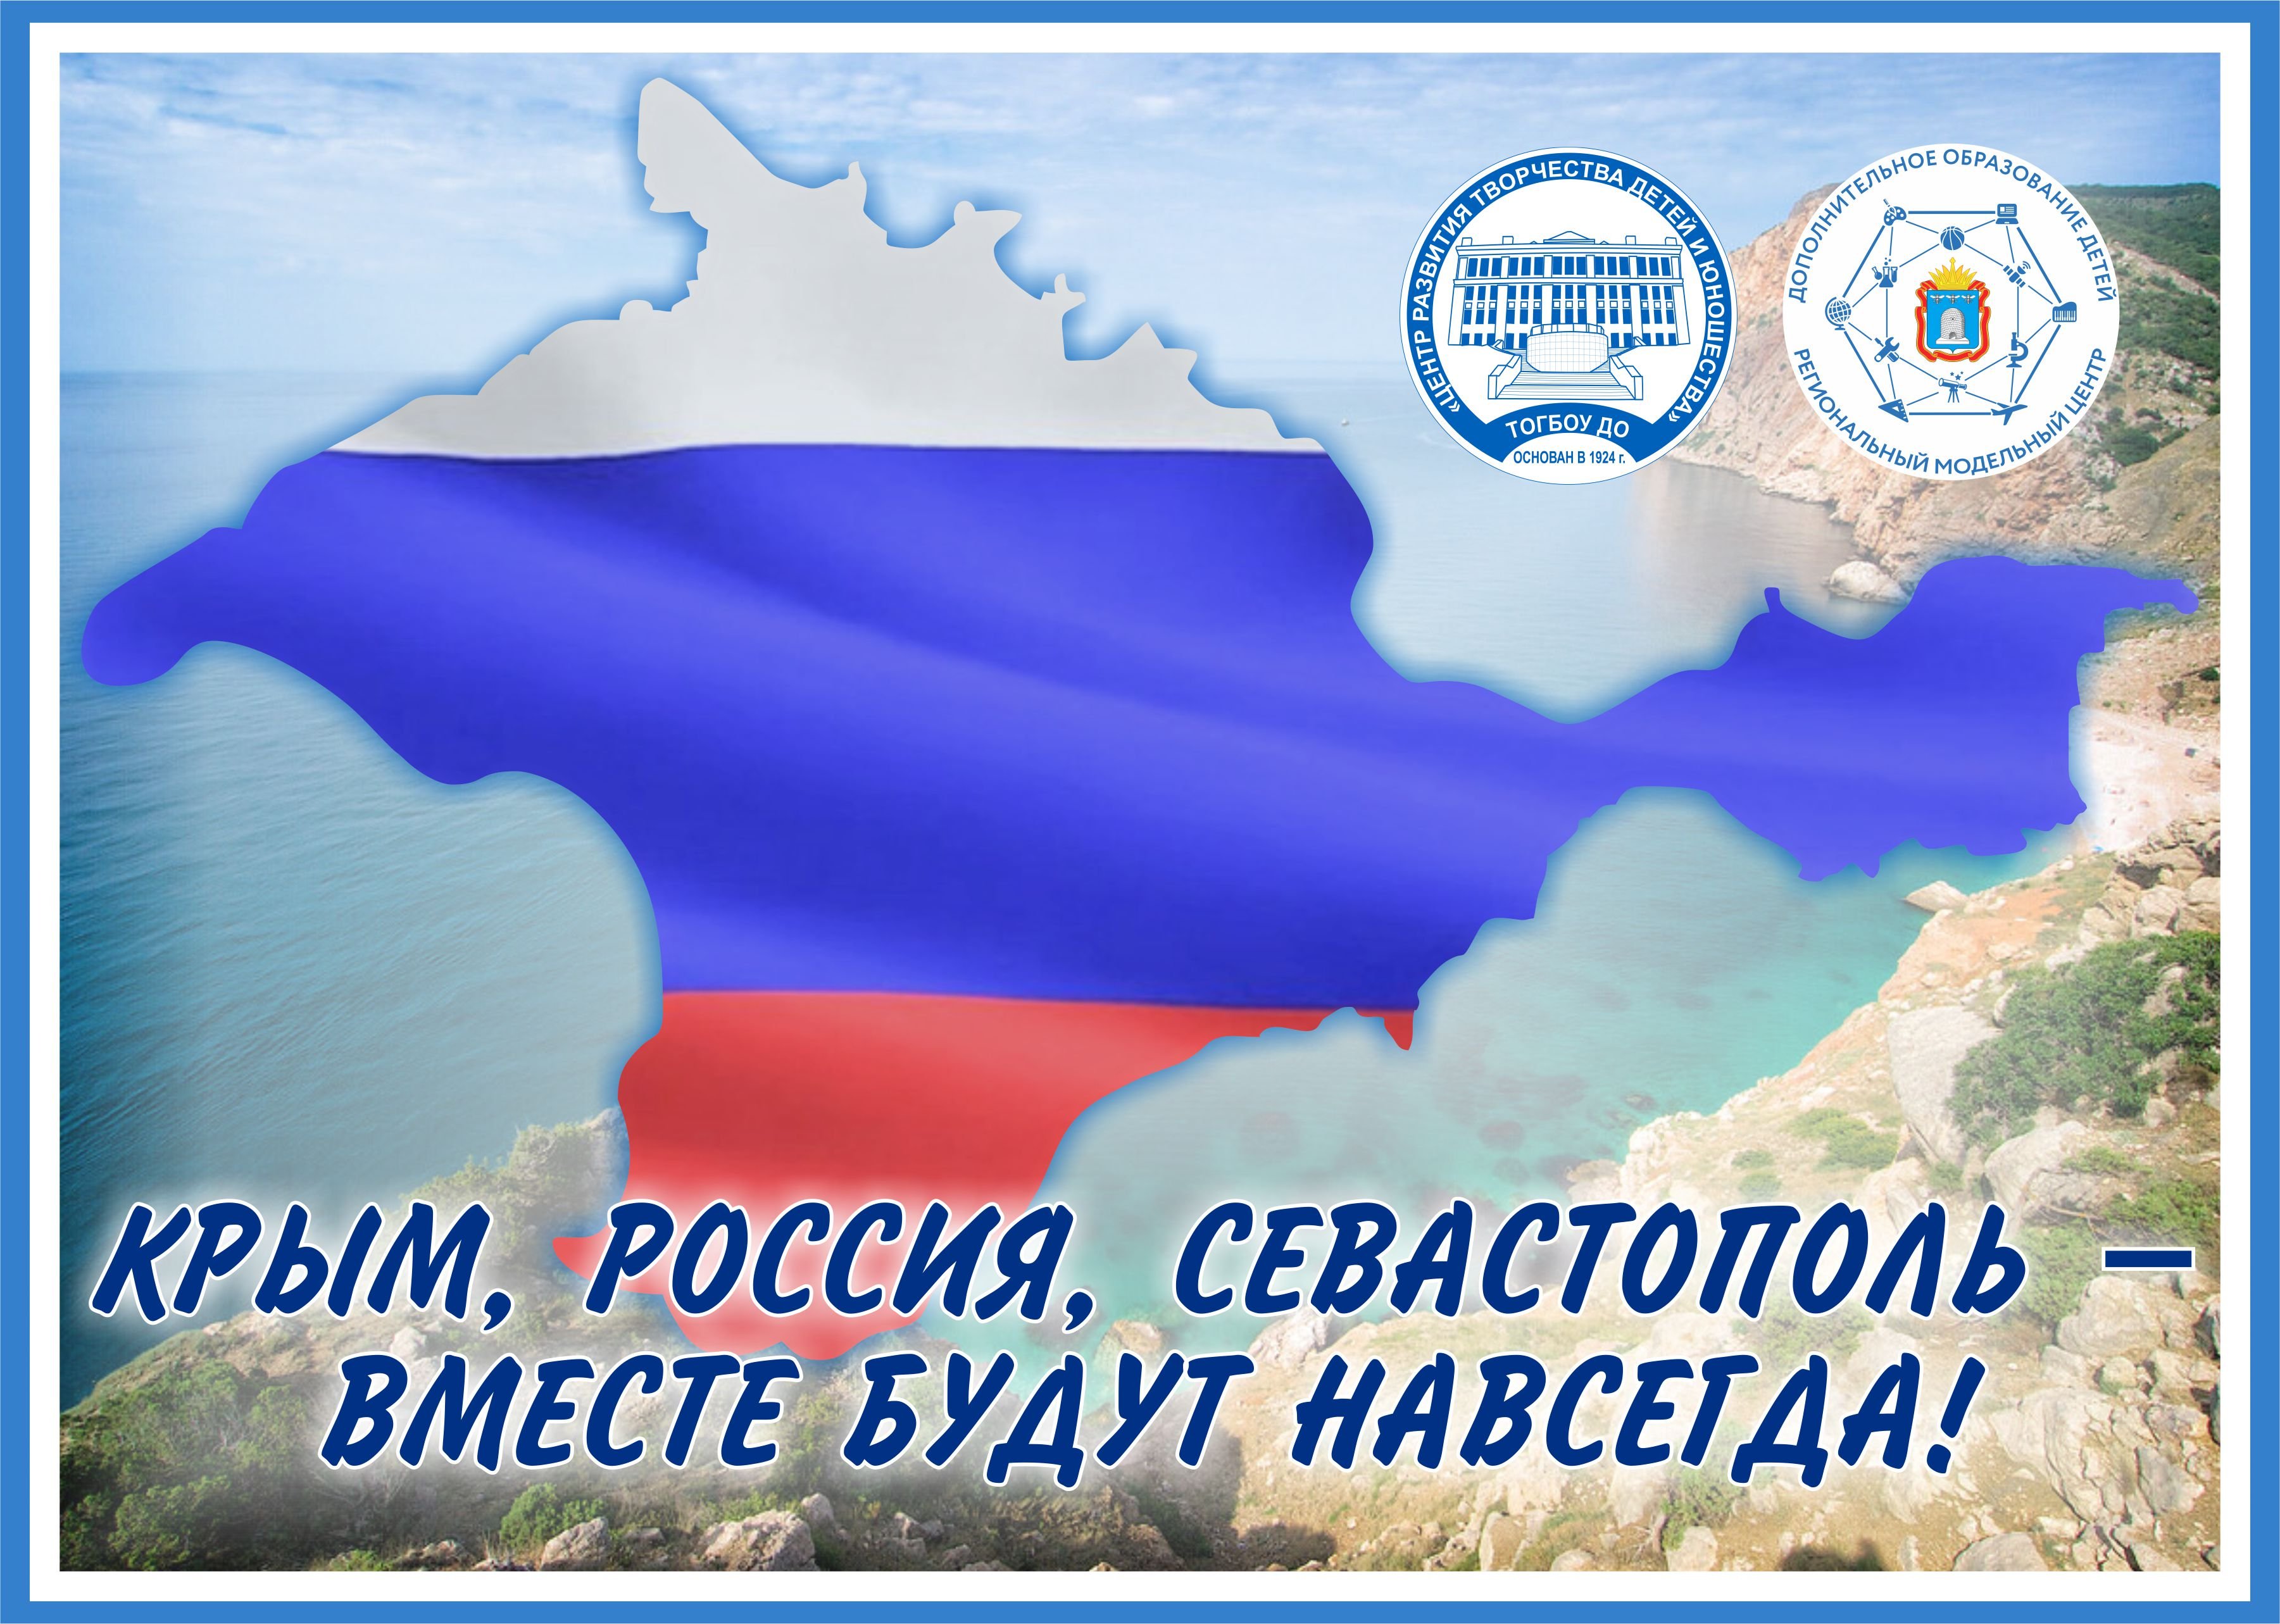 Поздравление с 10 летием крыма россией воссоединения. День воссоединения Крыма с Россией.